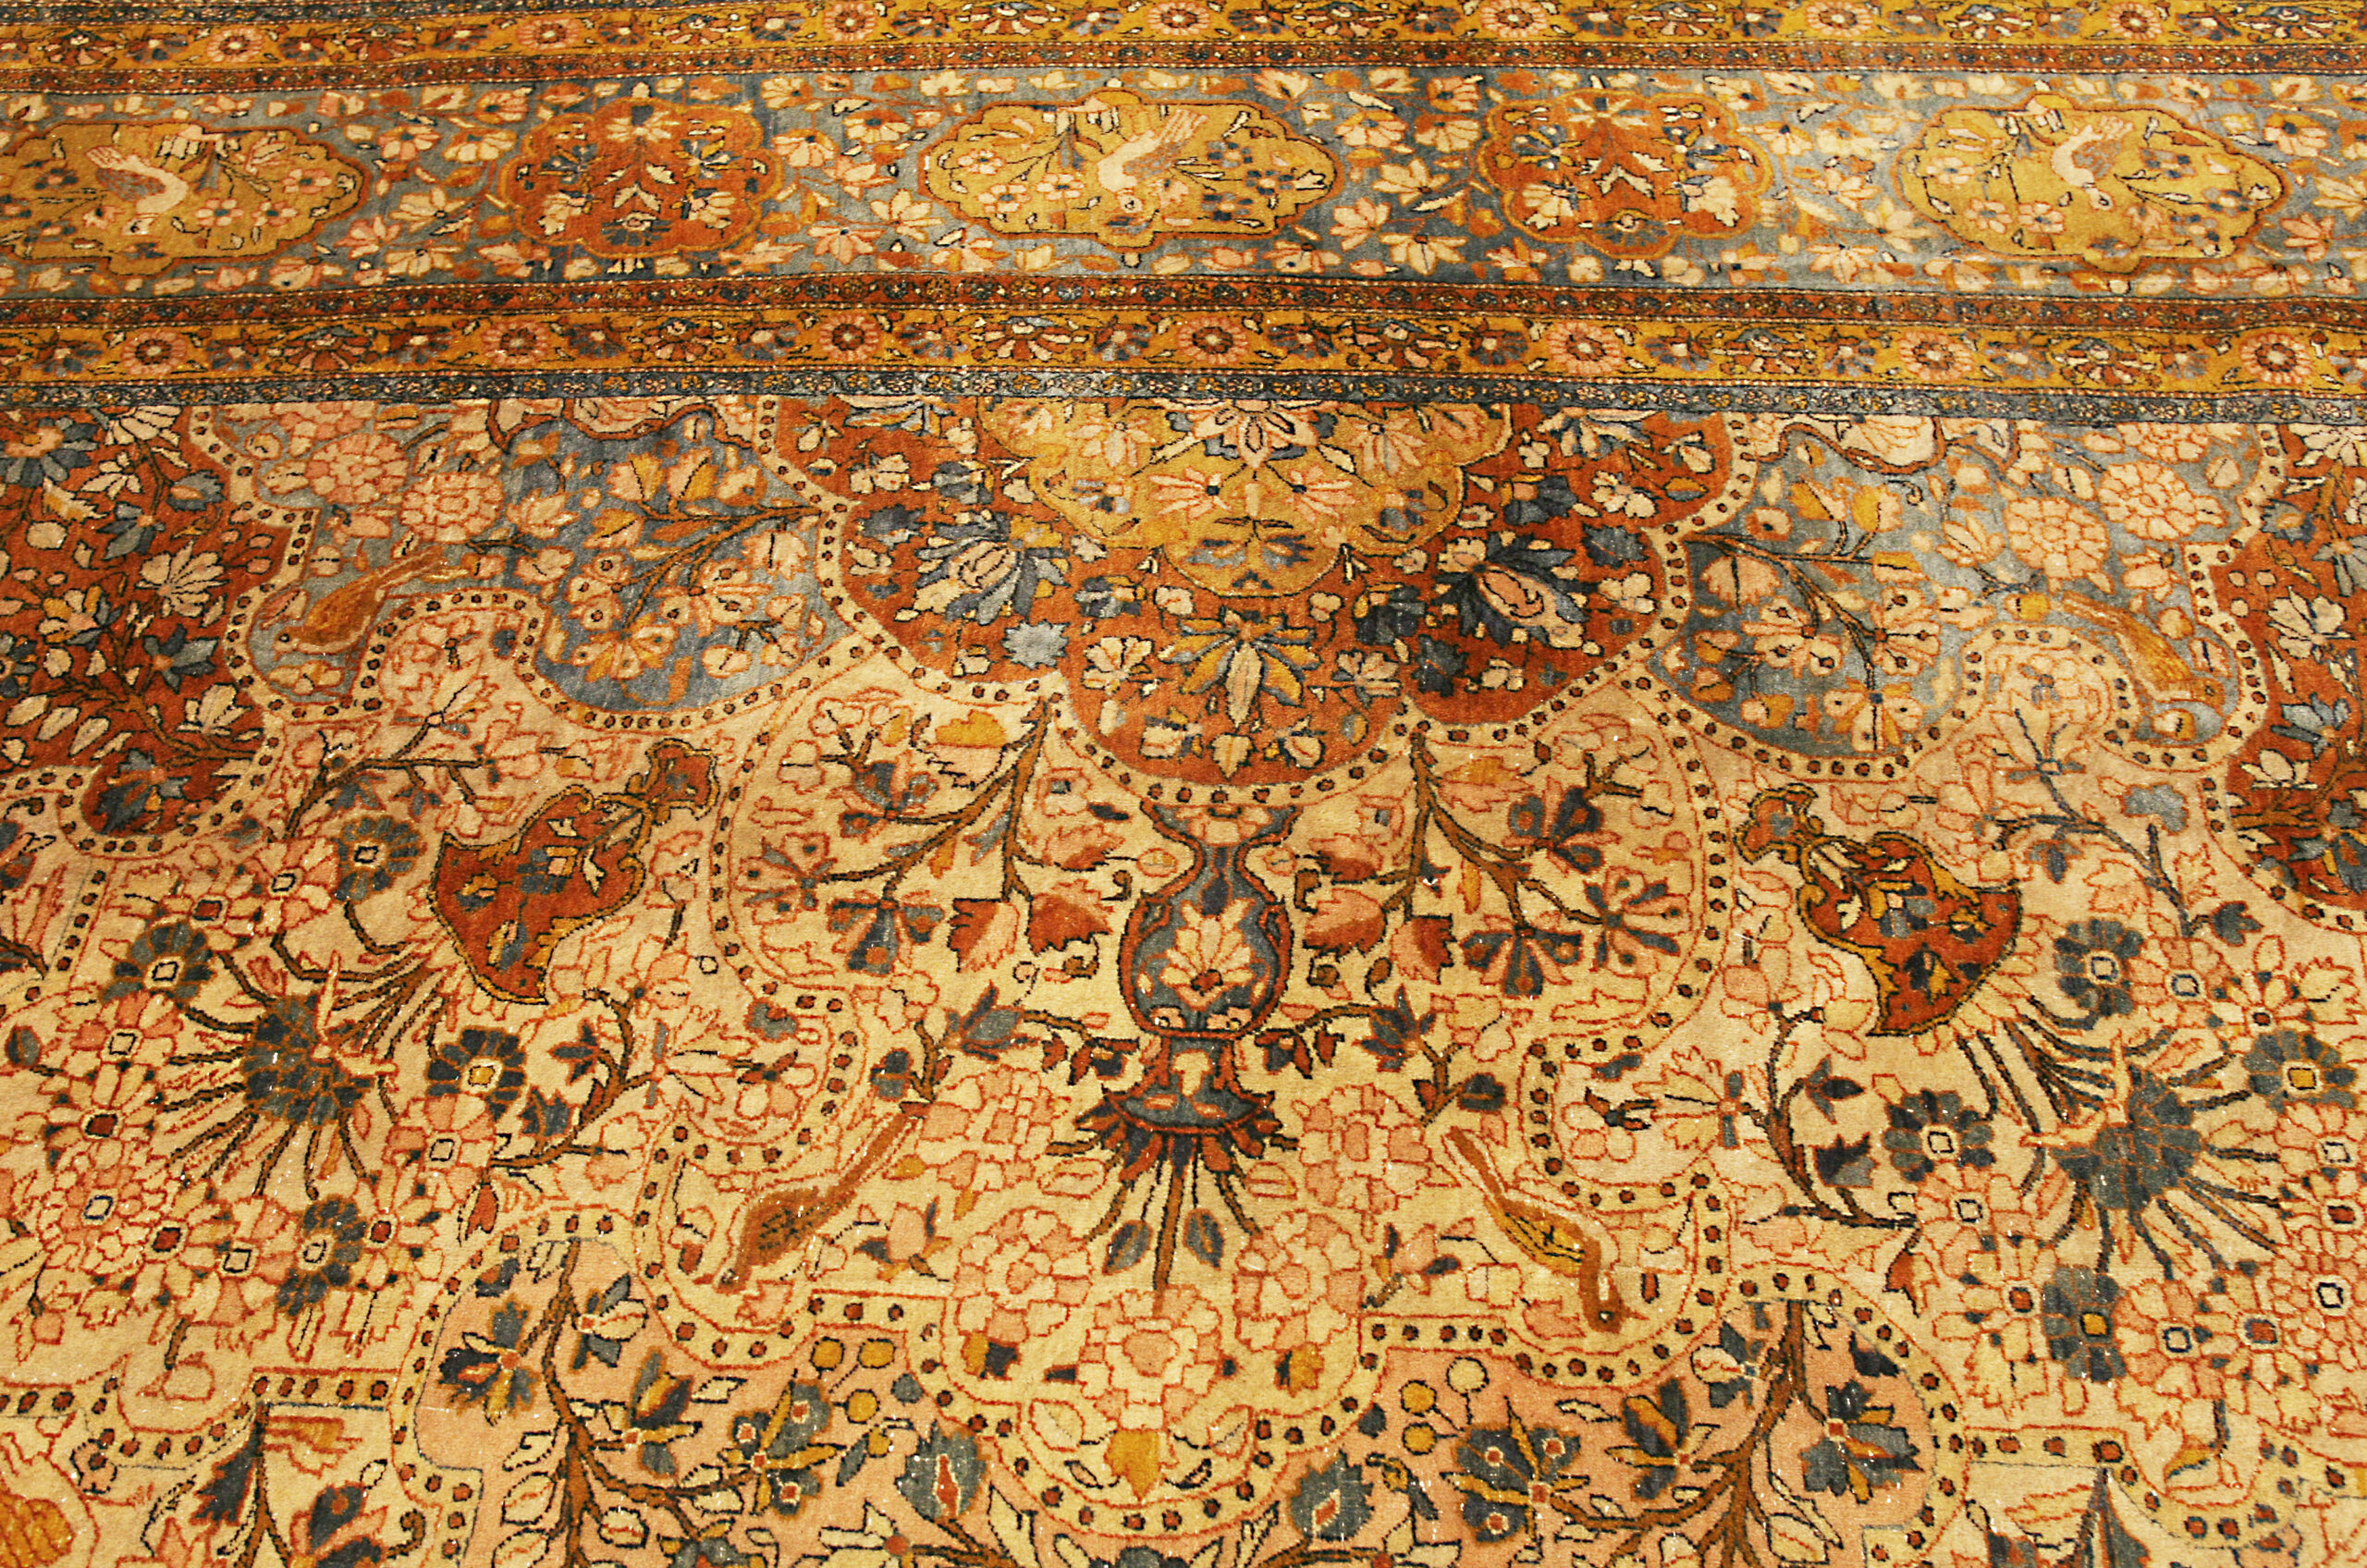 Teppich Persischer Antiker Kashan Dabir n°:77879683